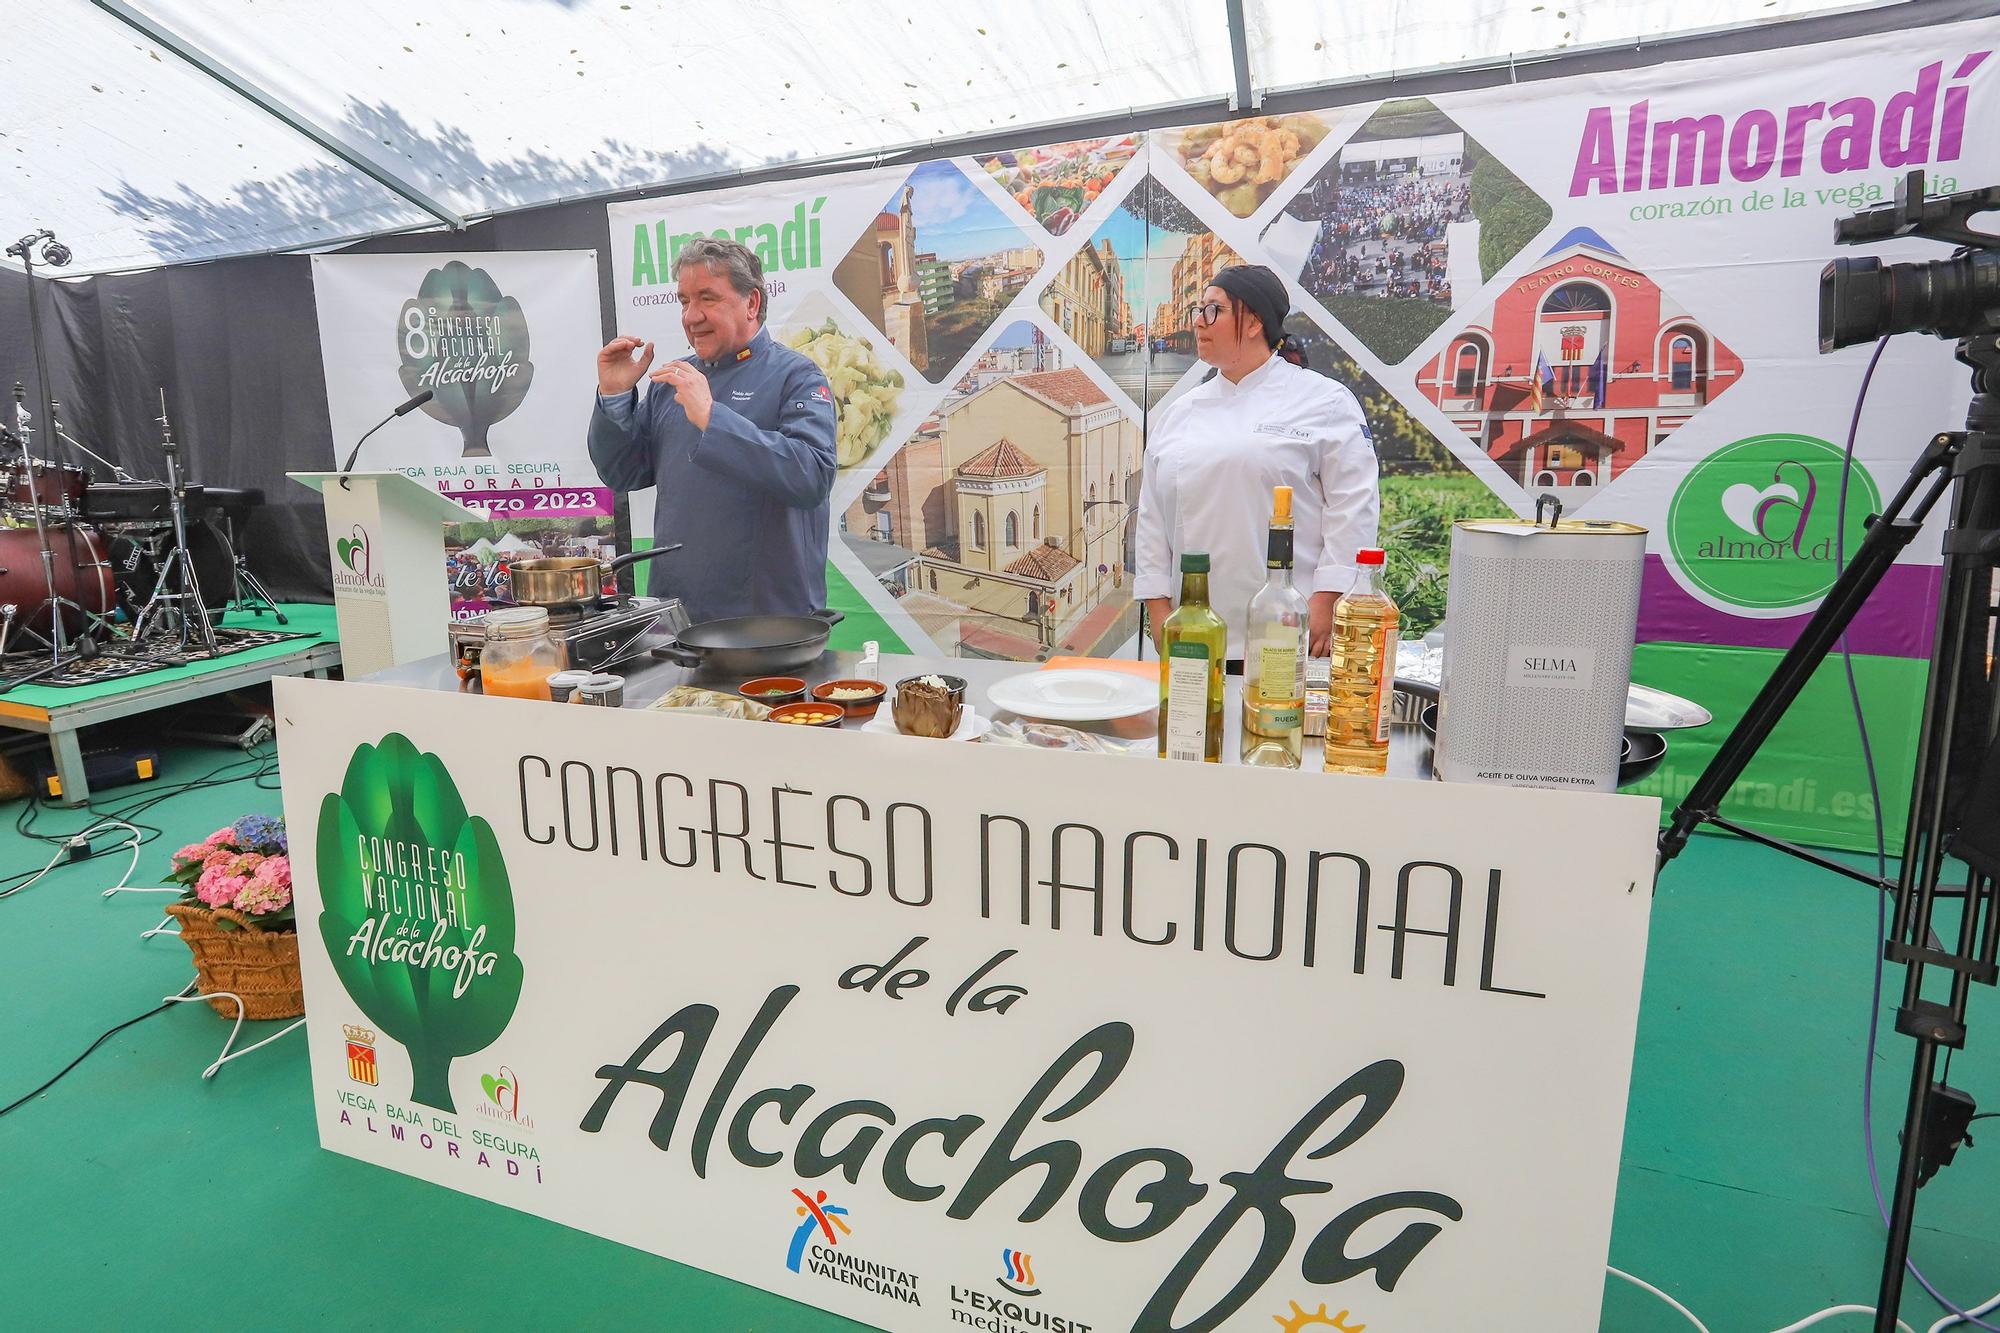 8ª Congreso Nacional de la Alcachofa en Almoradí